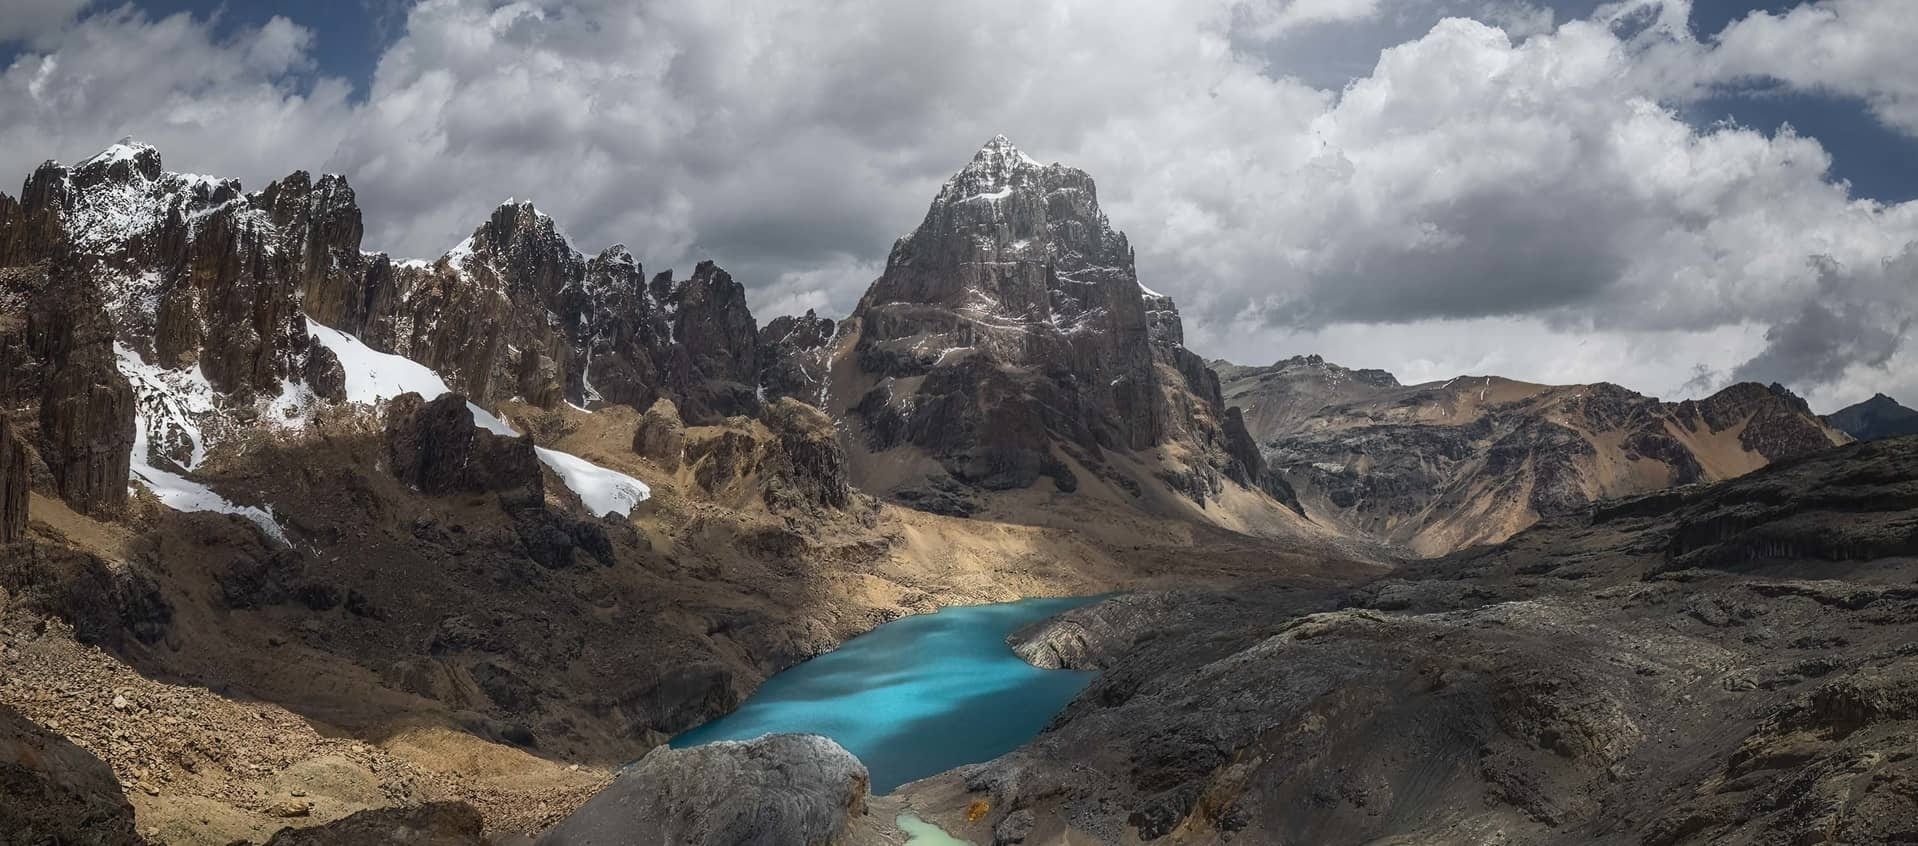 Senderismo en los Andes peruanos con un Guía, Huayhuash, Perú